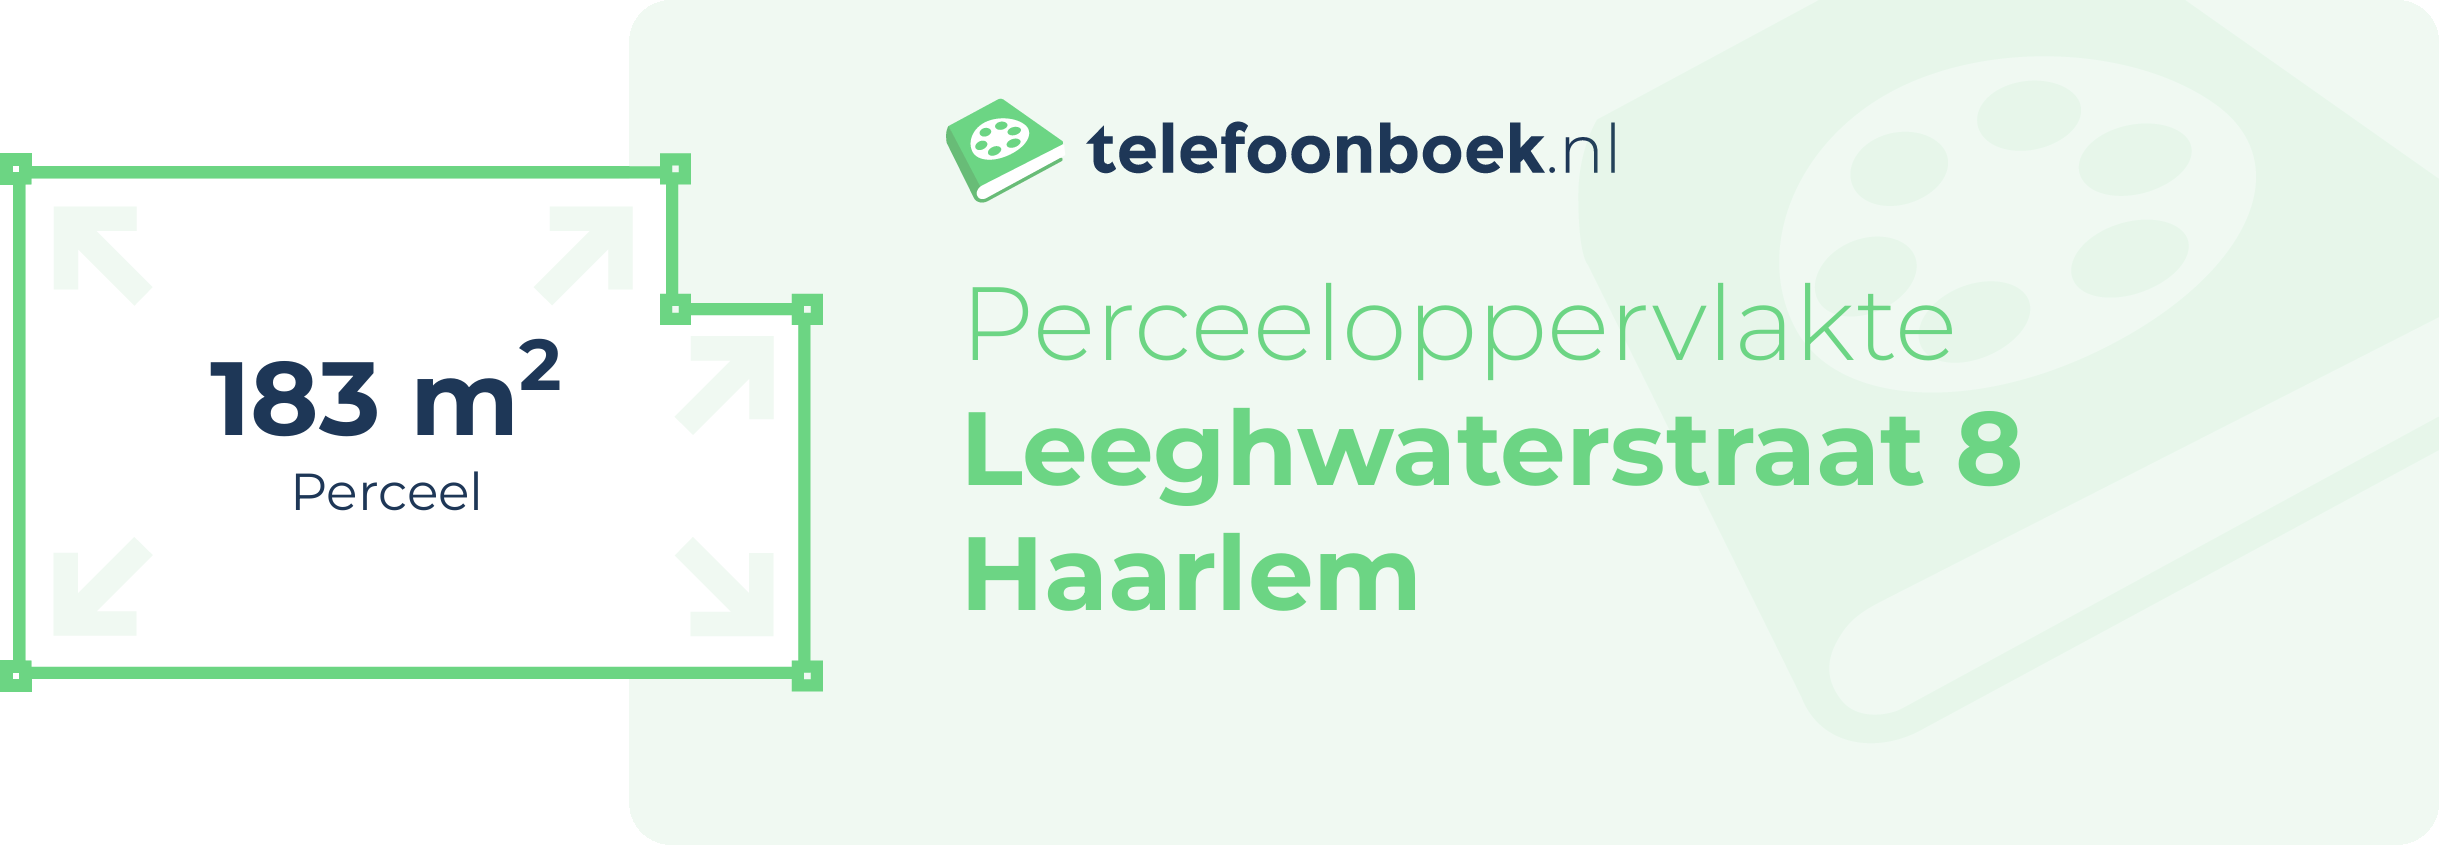 Perceeloppervlakte Leeghwaterstraat 8 Haarlem